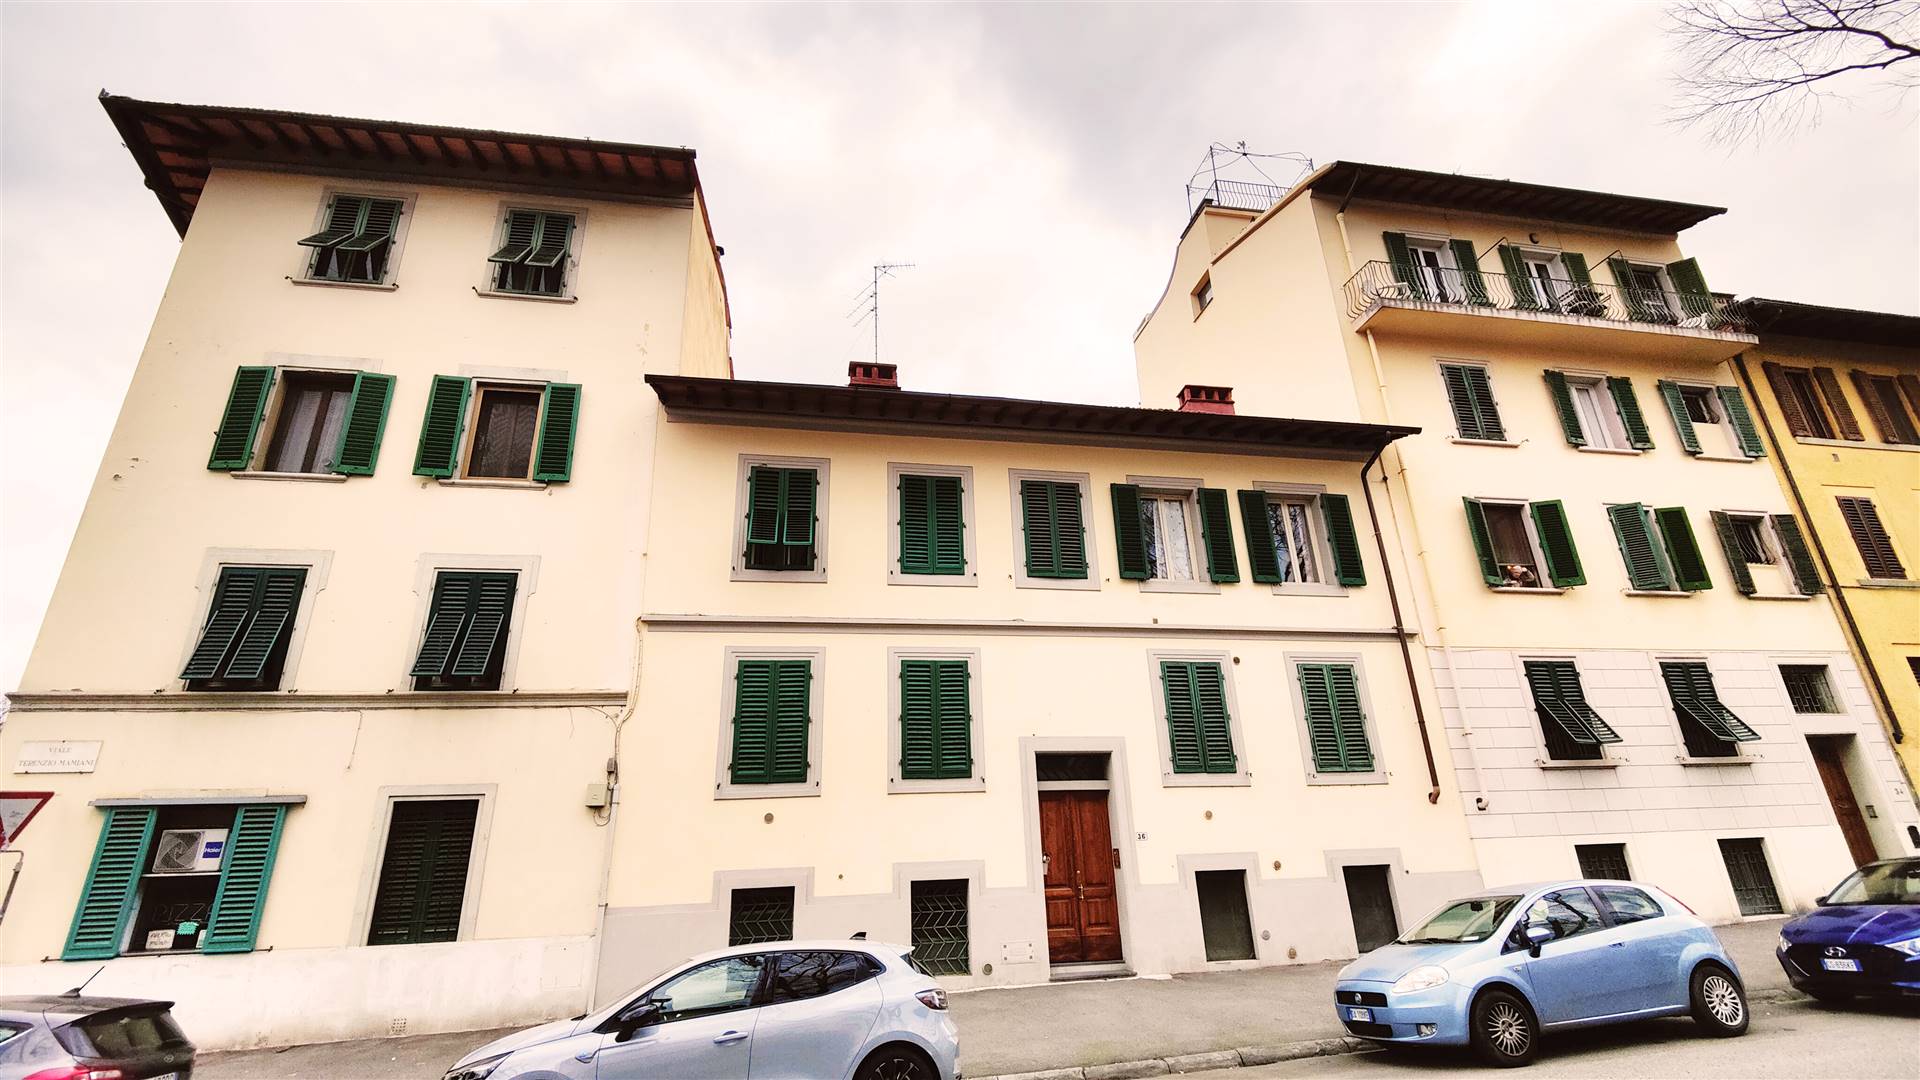 Affascinante appartamento in vendita situato al primo e ultimo piano di un piccolo edificio condominiale in Viale Terenzio Mamiani. L'immobile, 